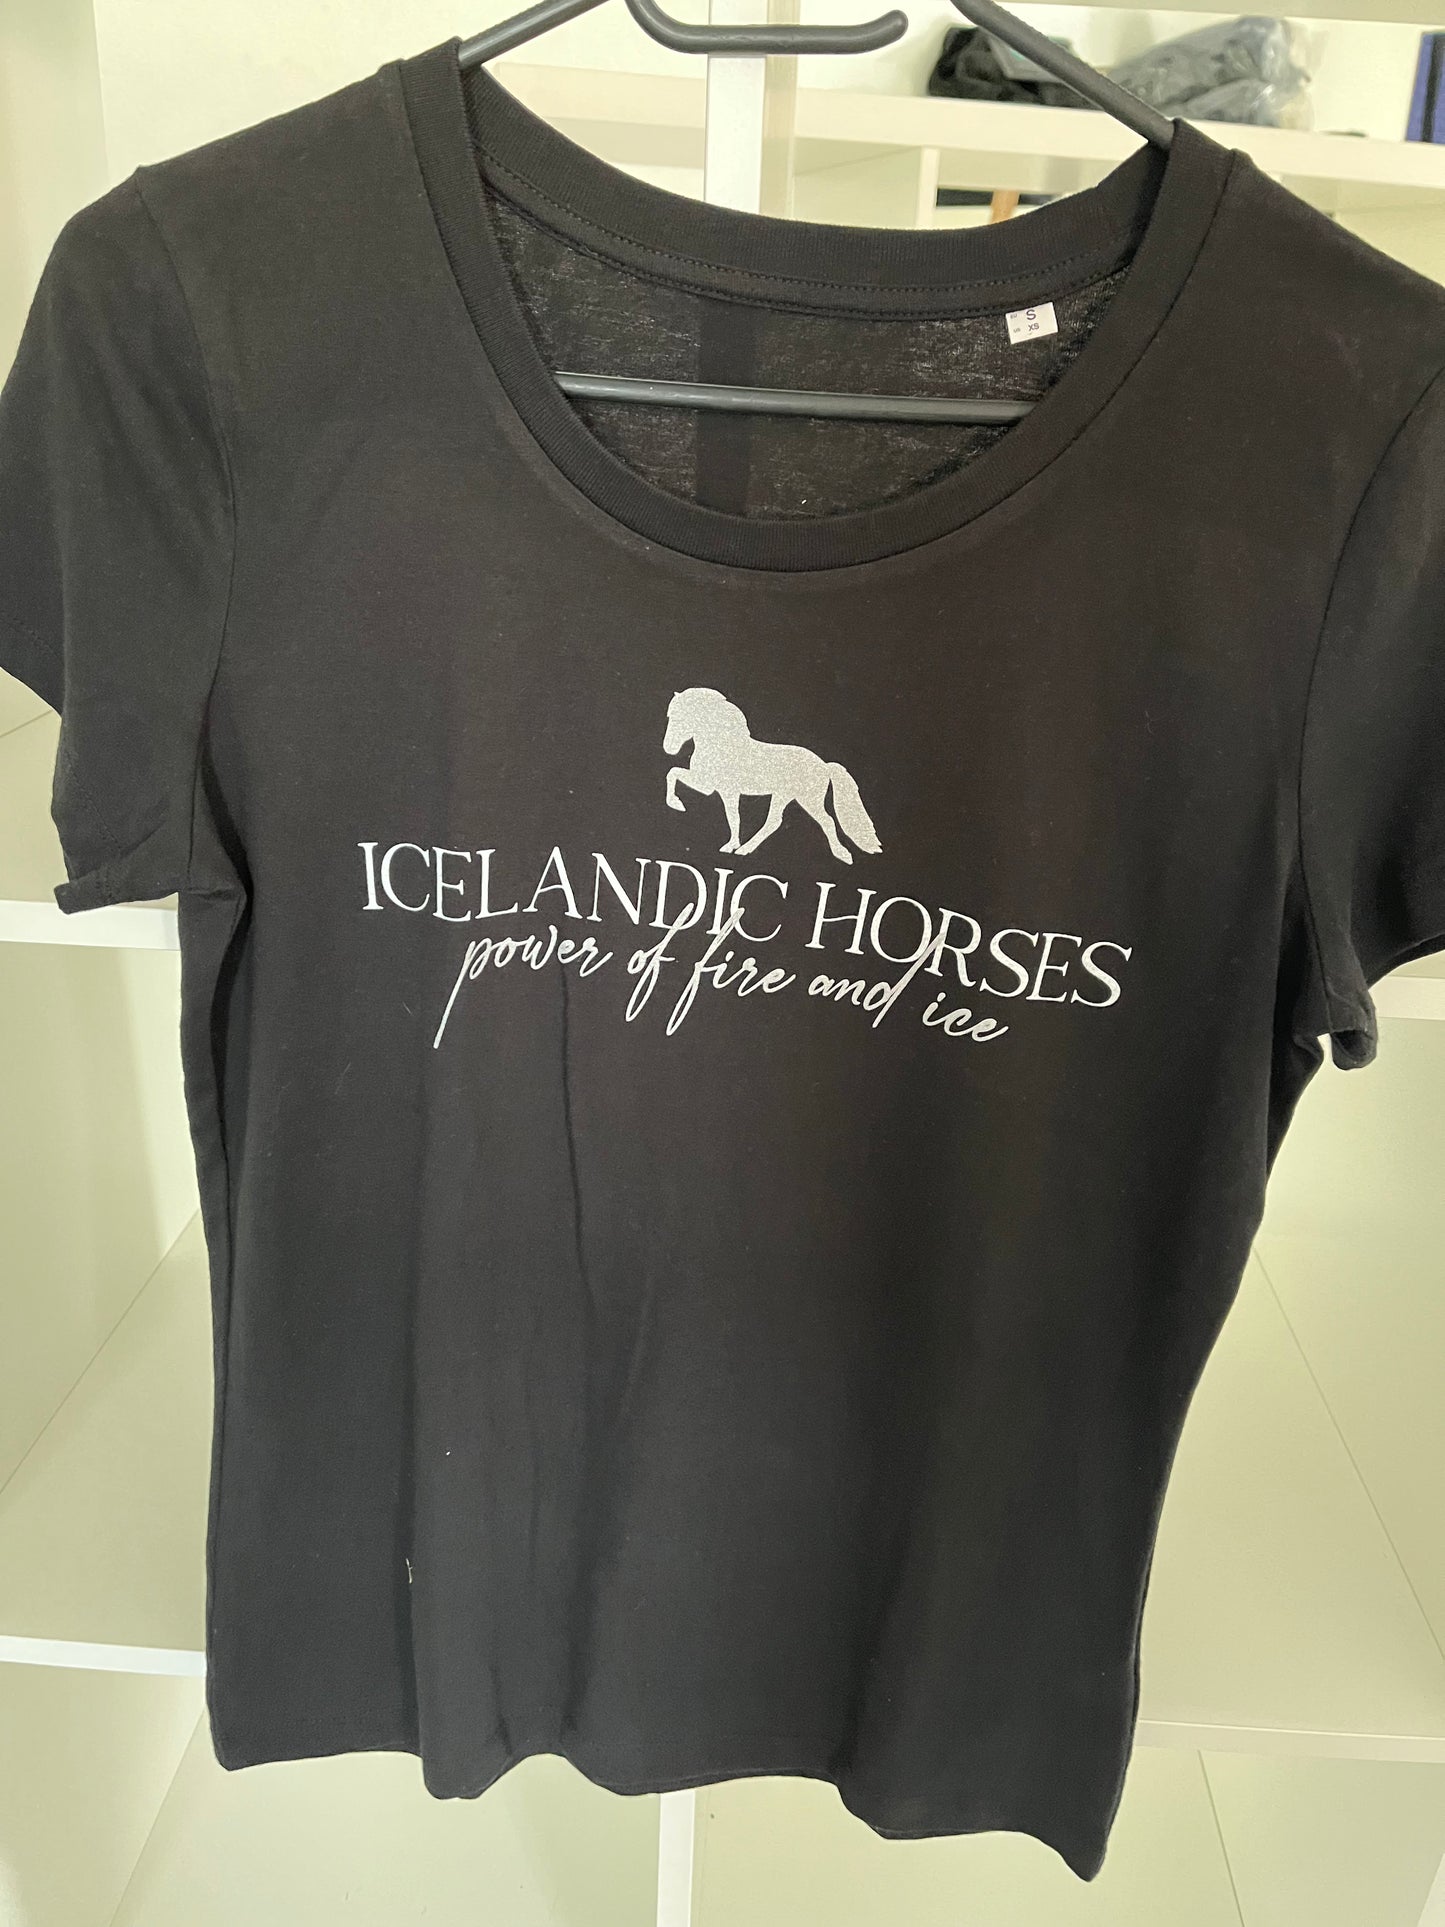 Damen-Shirt "Icelandic Horses" schwarz